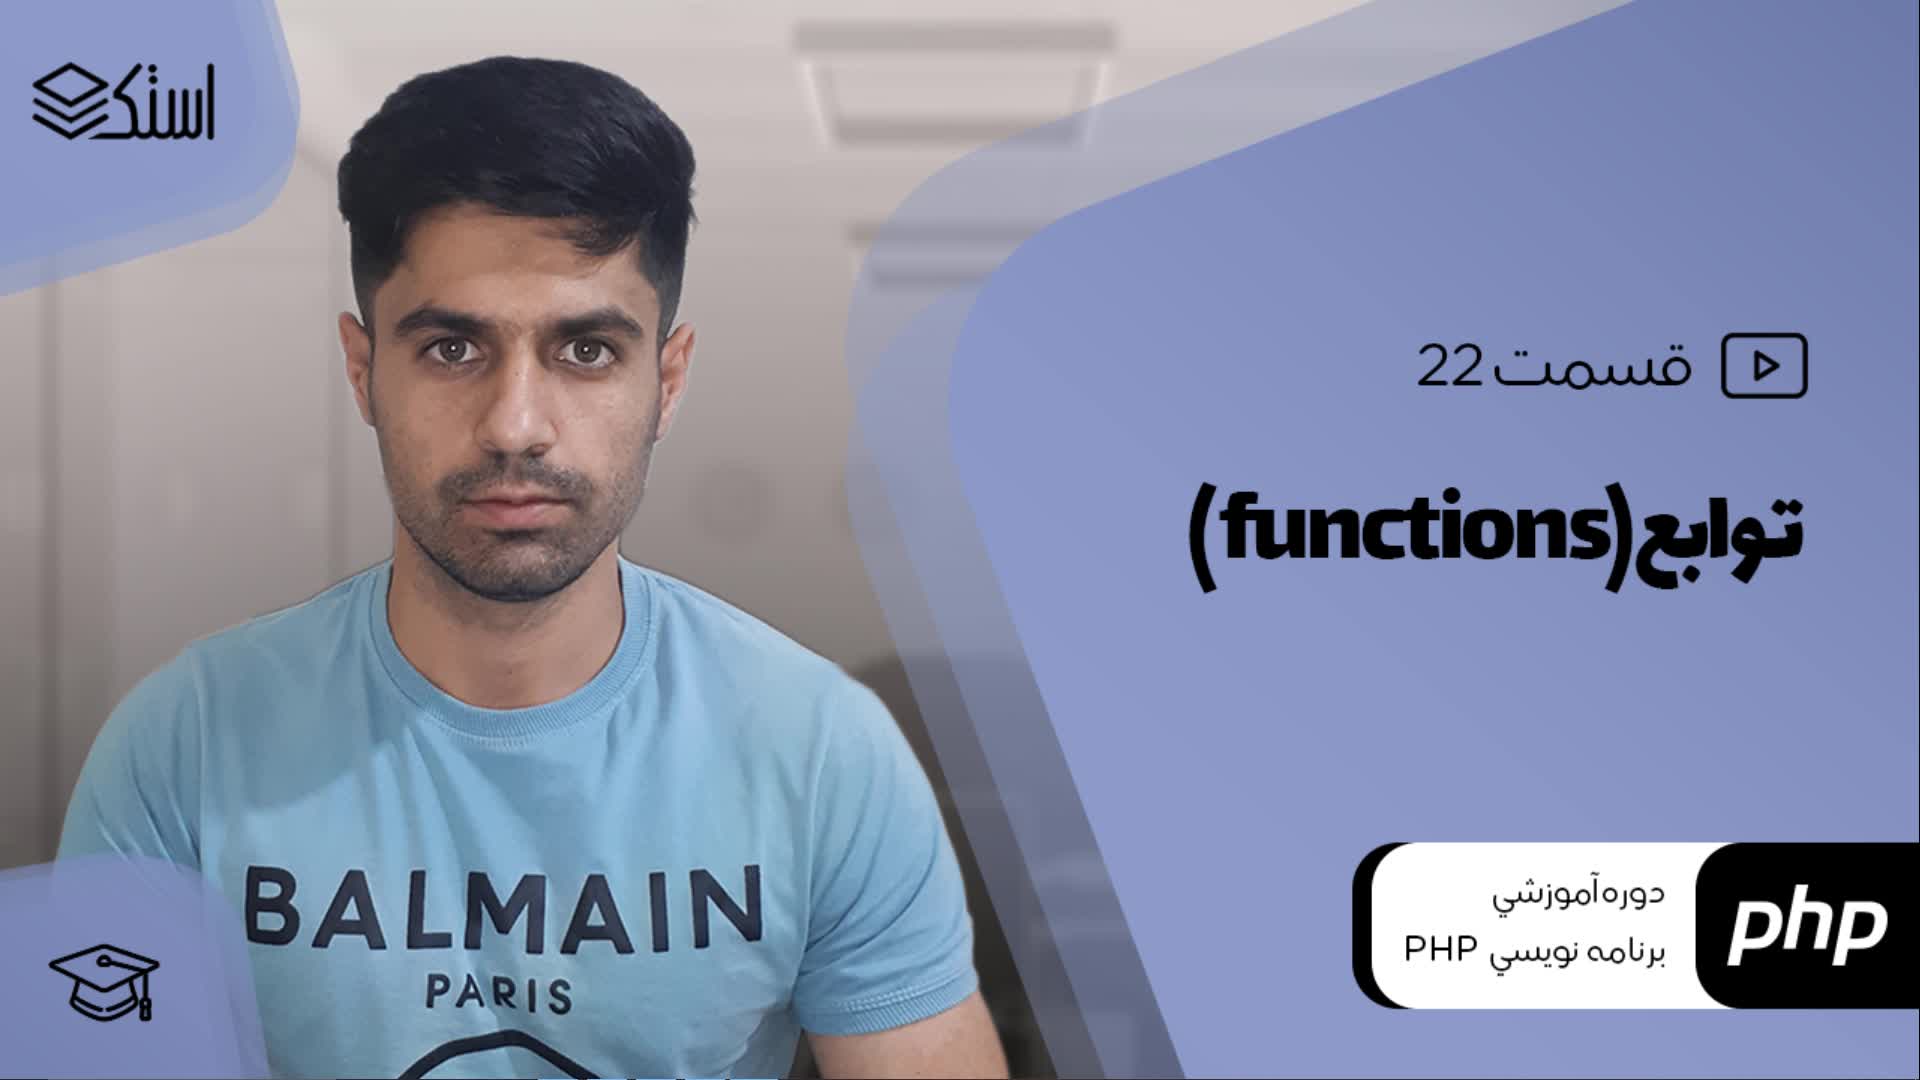 آموزش کار با توابع (Functions) در زبان PHP (ویدیو + توضیحات) - قسمت 22 - استک لرن